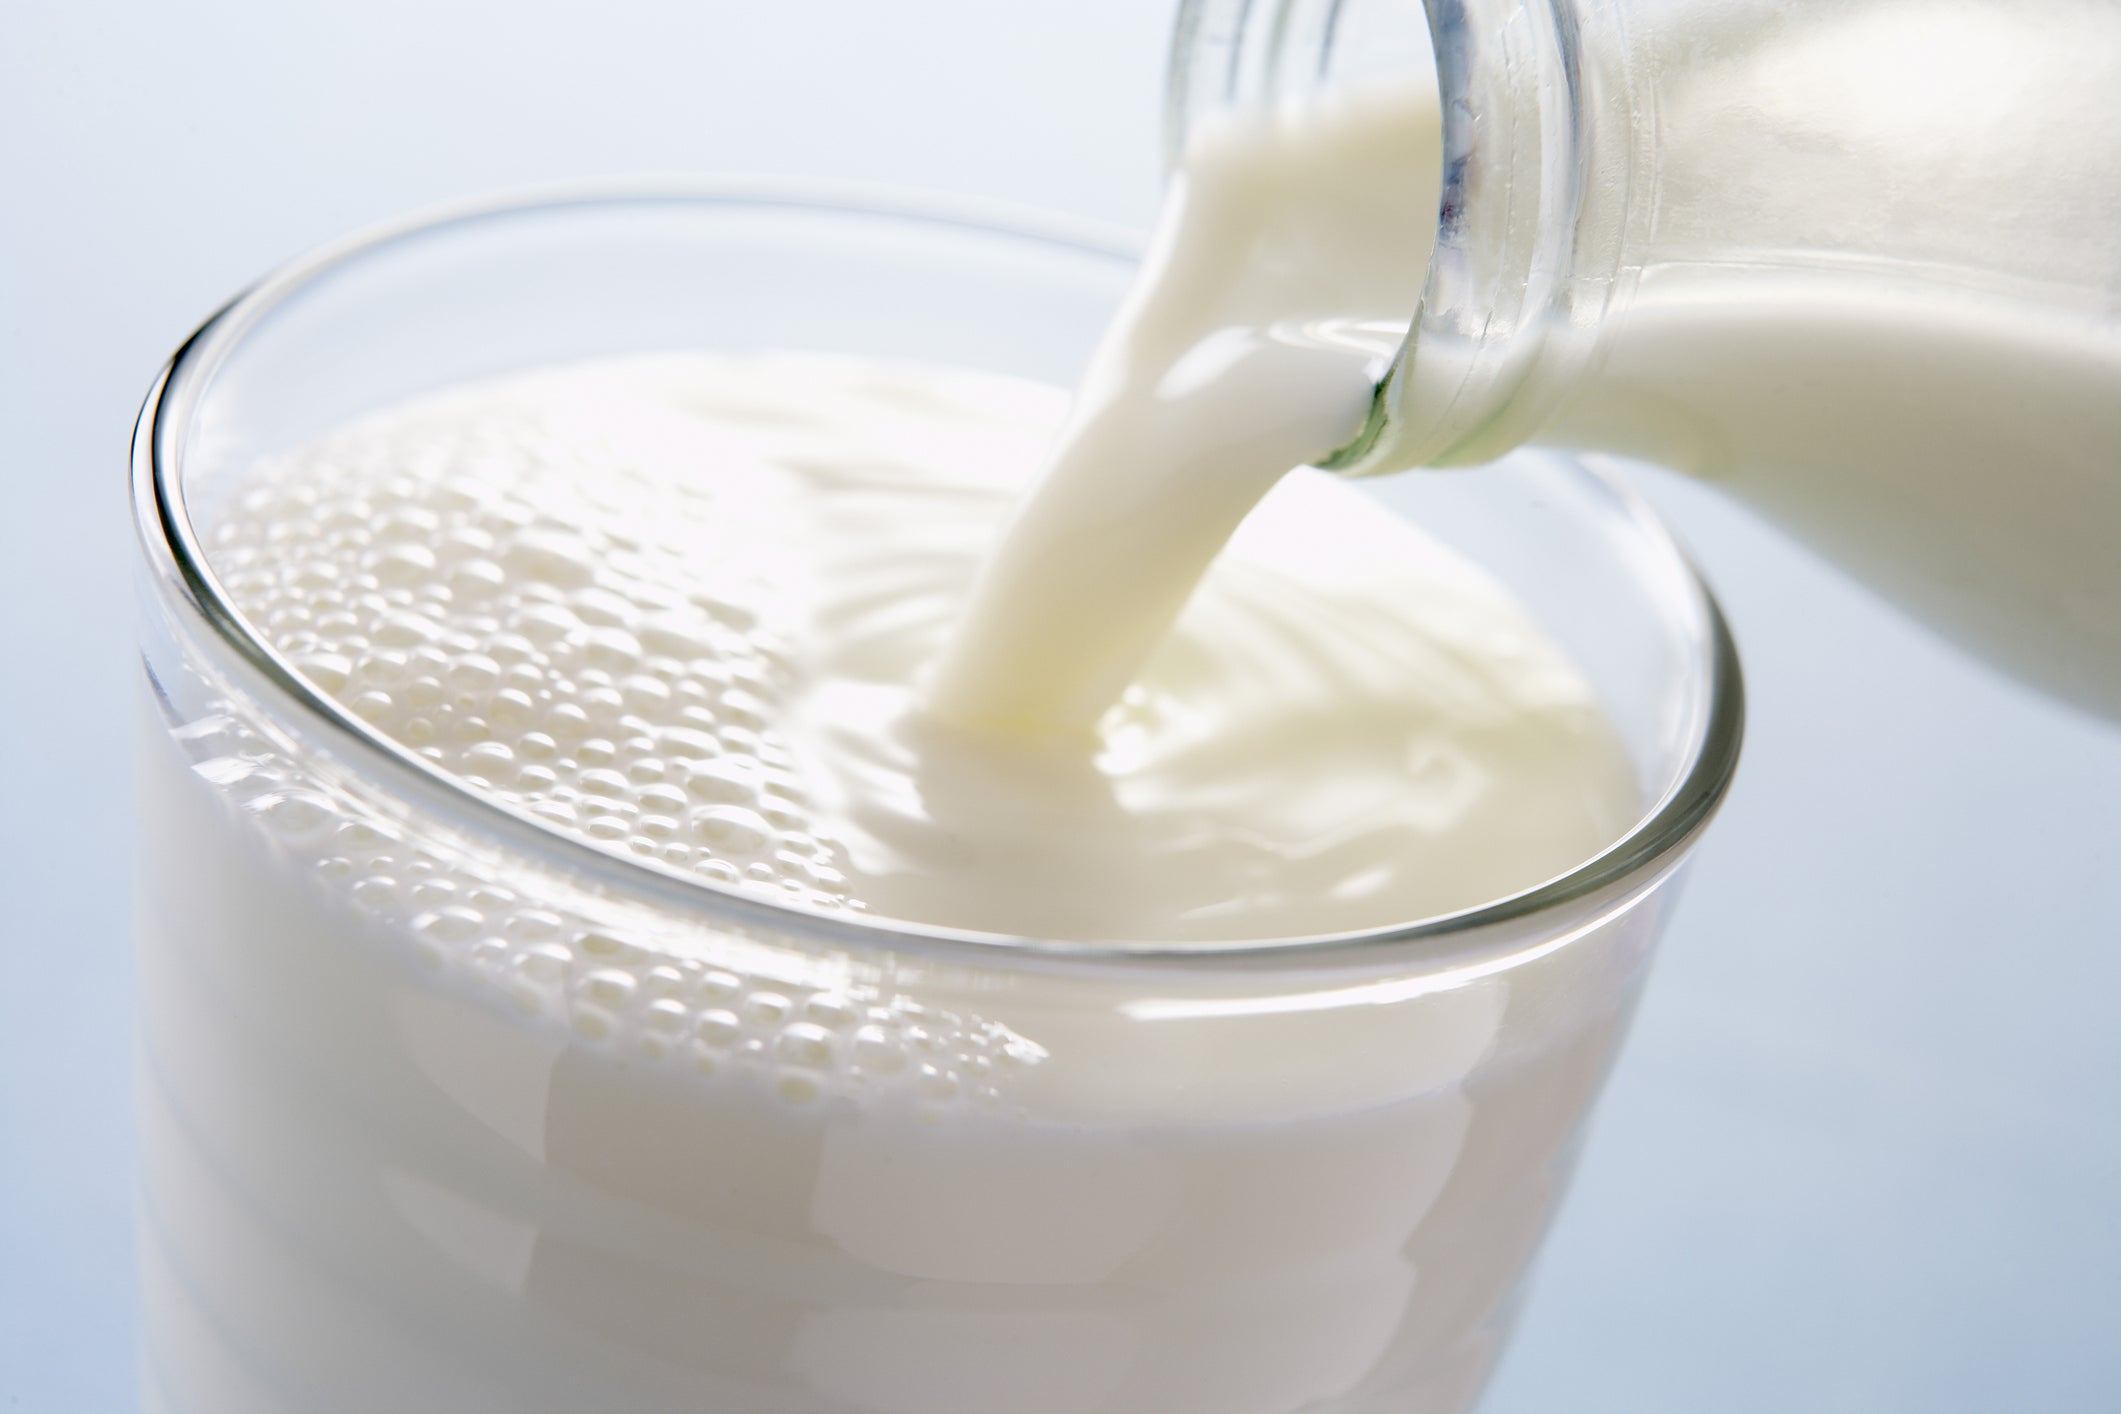 10 ประโยชน์ของนมที่คุณไม่เคยรู้ แม้แต่ทุกครั้งที่ดื่มทุกวัน